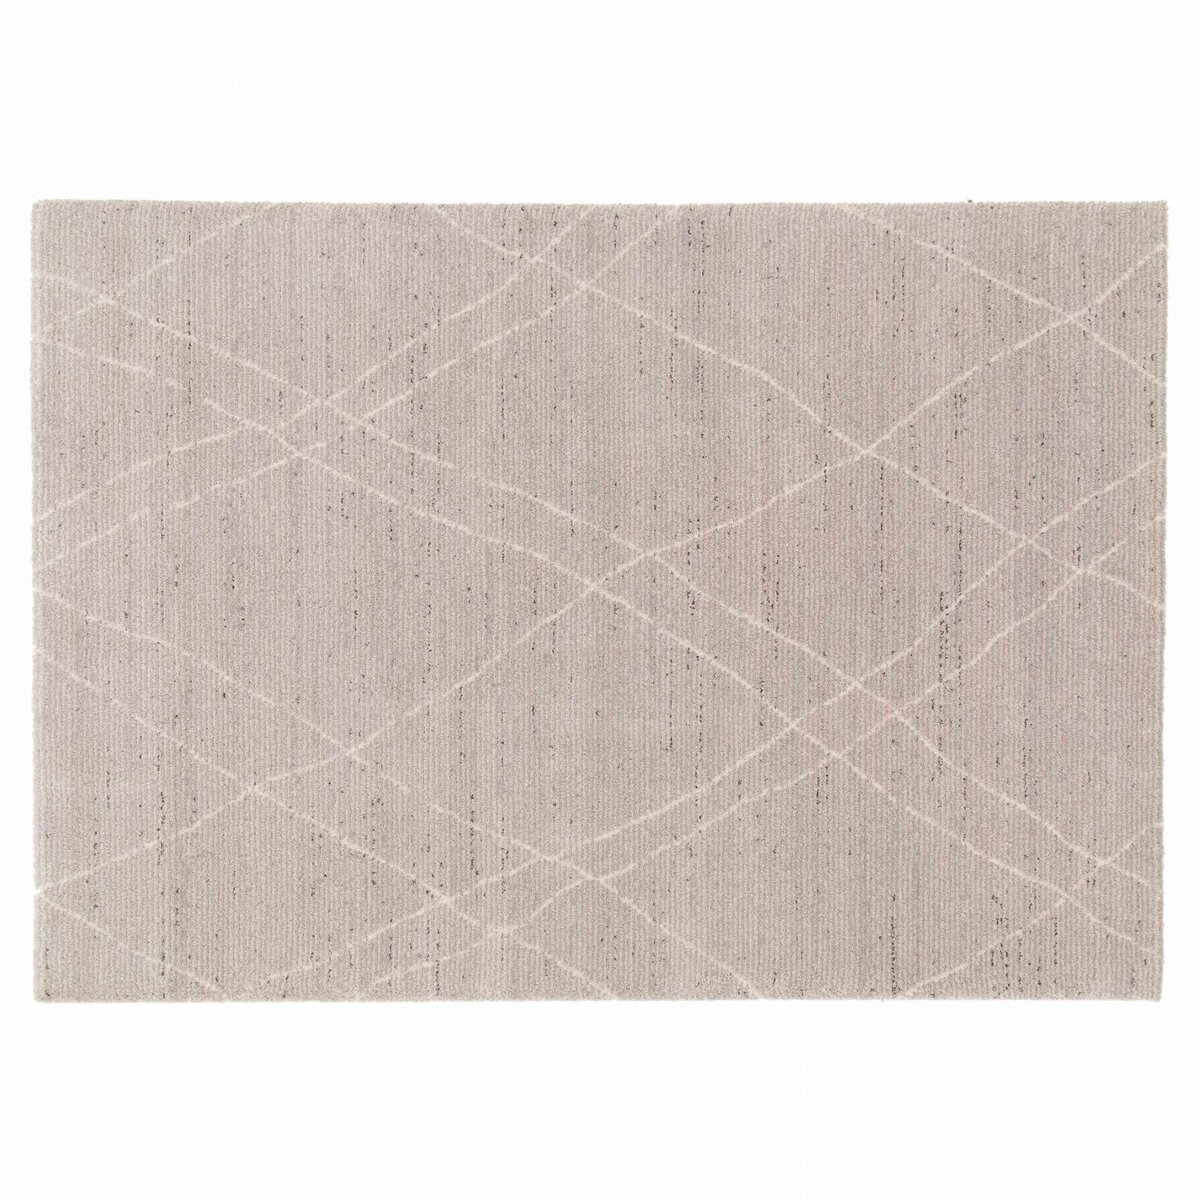 Tapis berbère gris et blanc 120 x 170 cm